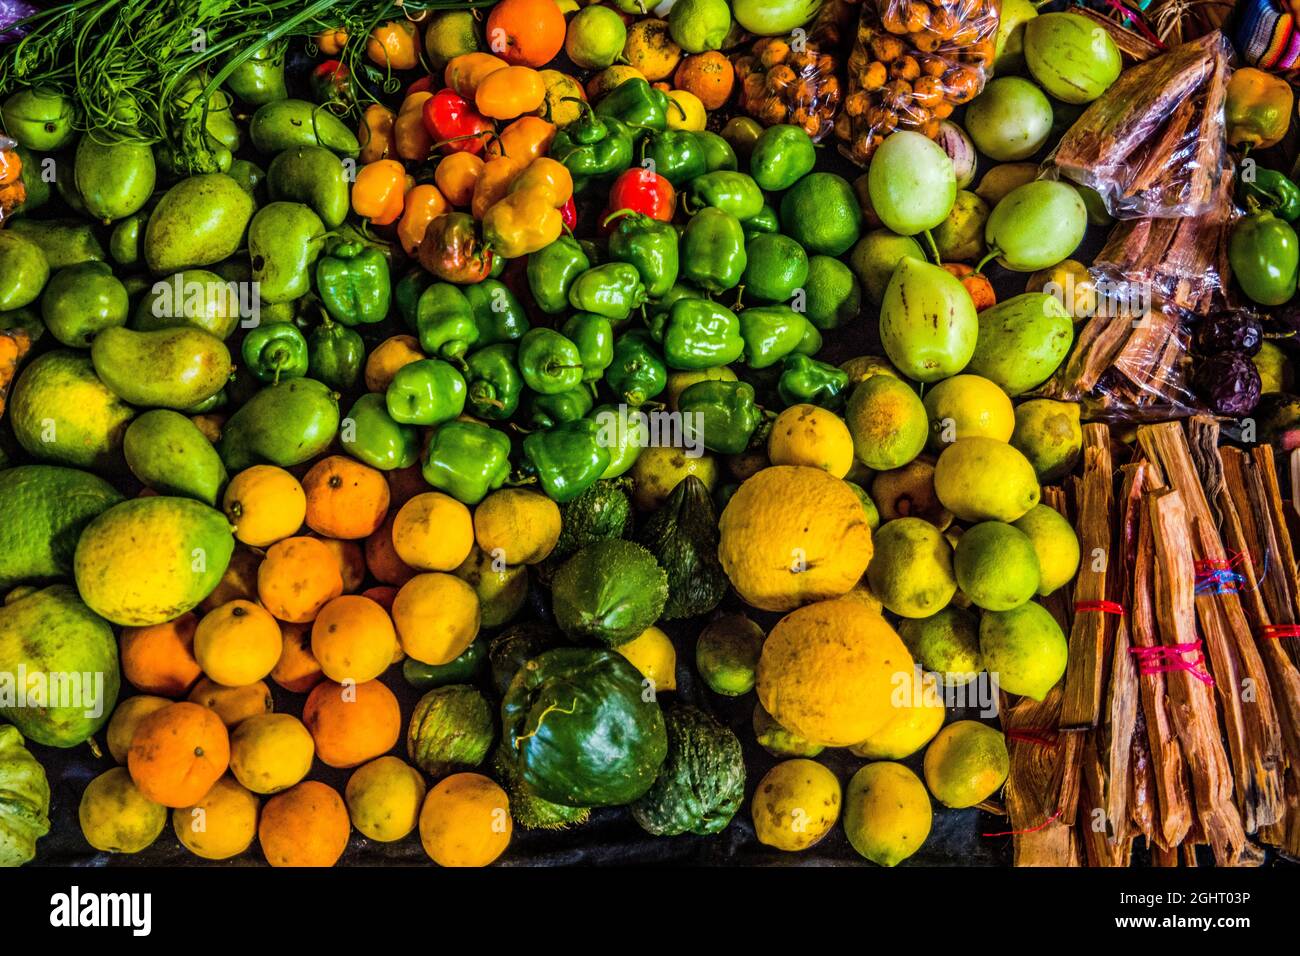 Fruit stalls, Solola highland market centre, Solola, Guatemala Stock Photo